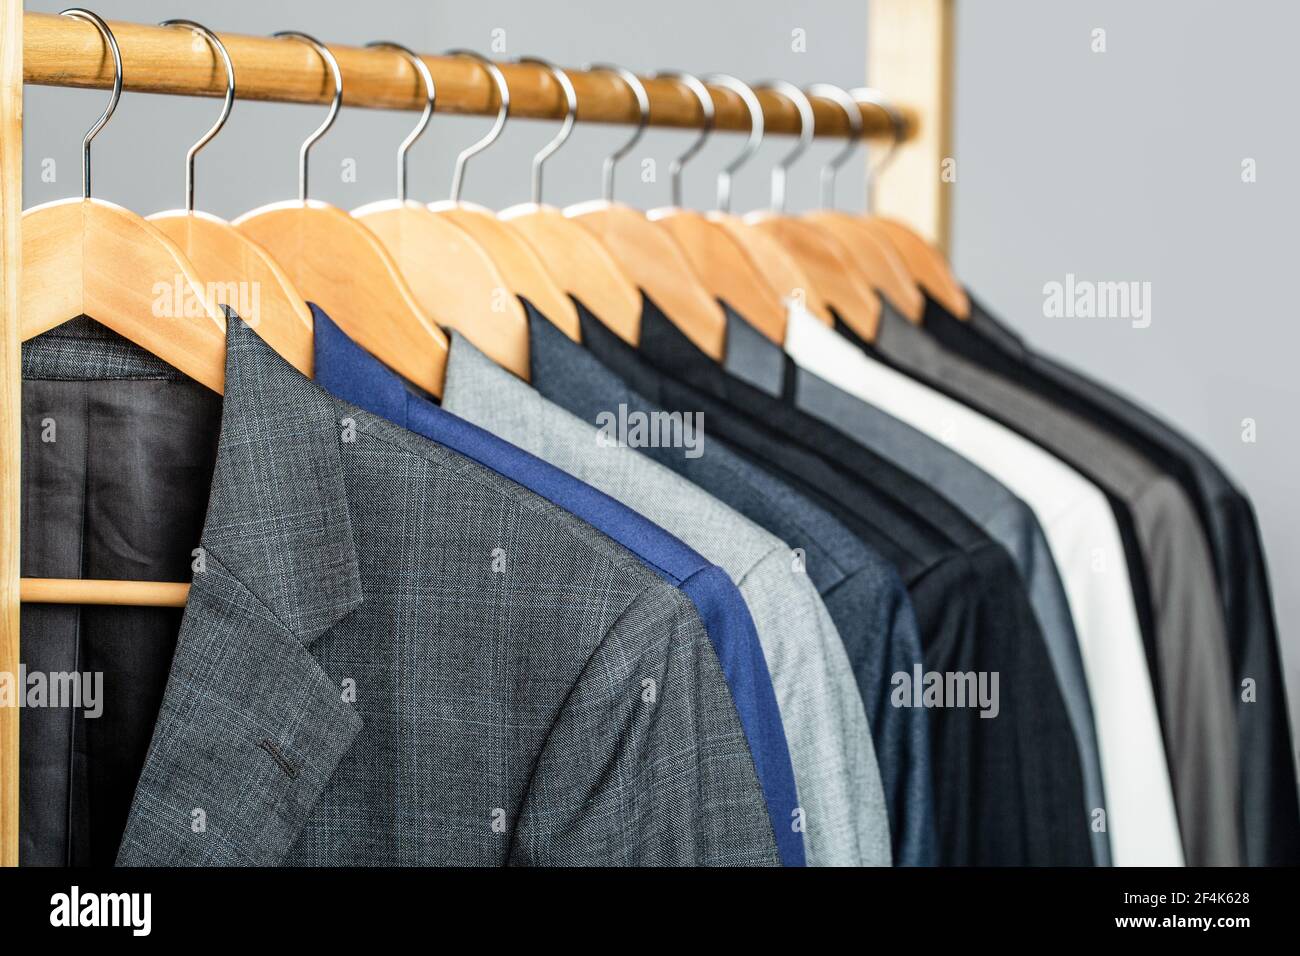 Herrenanzüge in verschiedenen Farben hängen auf Kleiderbügel in einem  Einzelhandelsgeschäft Kleidung, close-up. Herrenhemden, Anzug am Gestell.  Kleiderbügel mit Jacken darauf Stockfotografie - Alamy